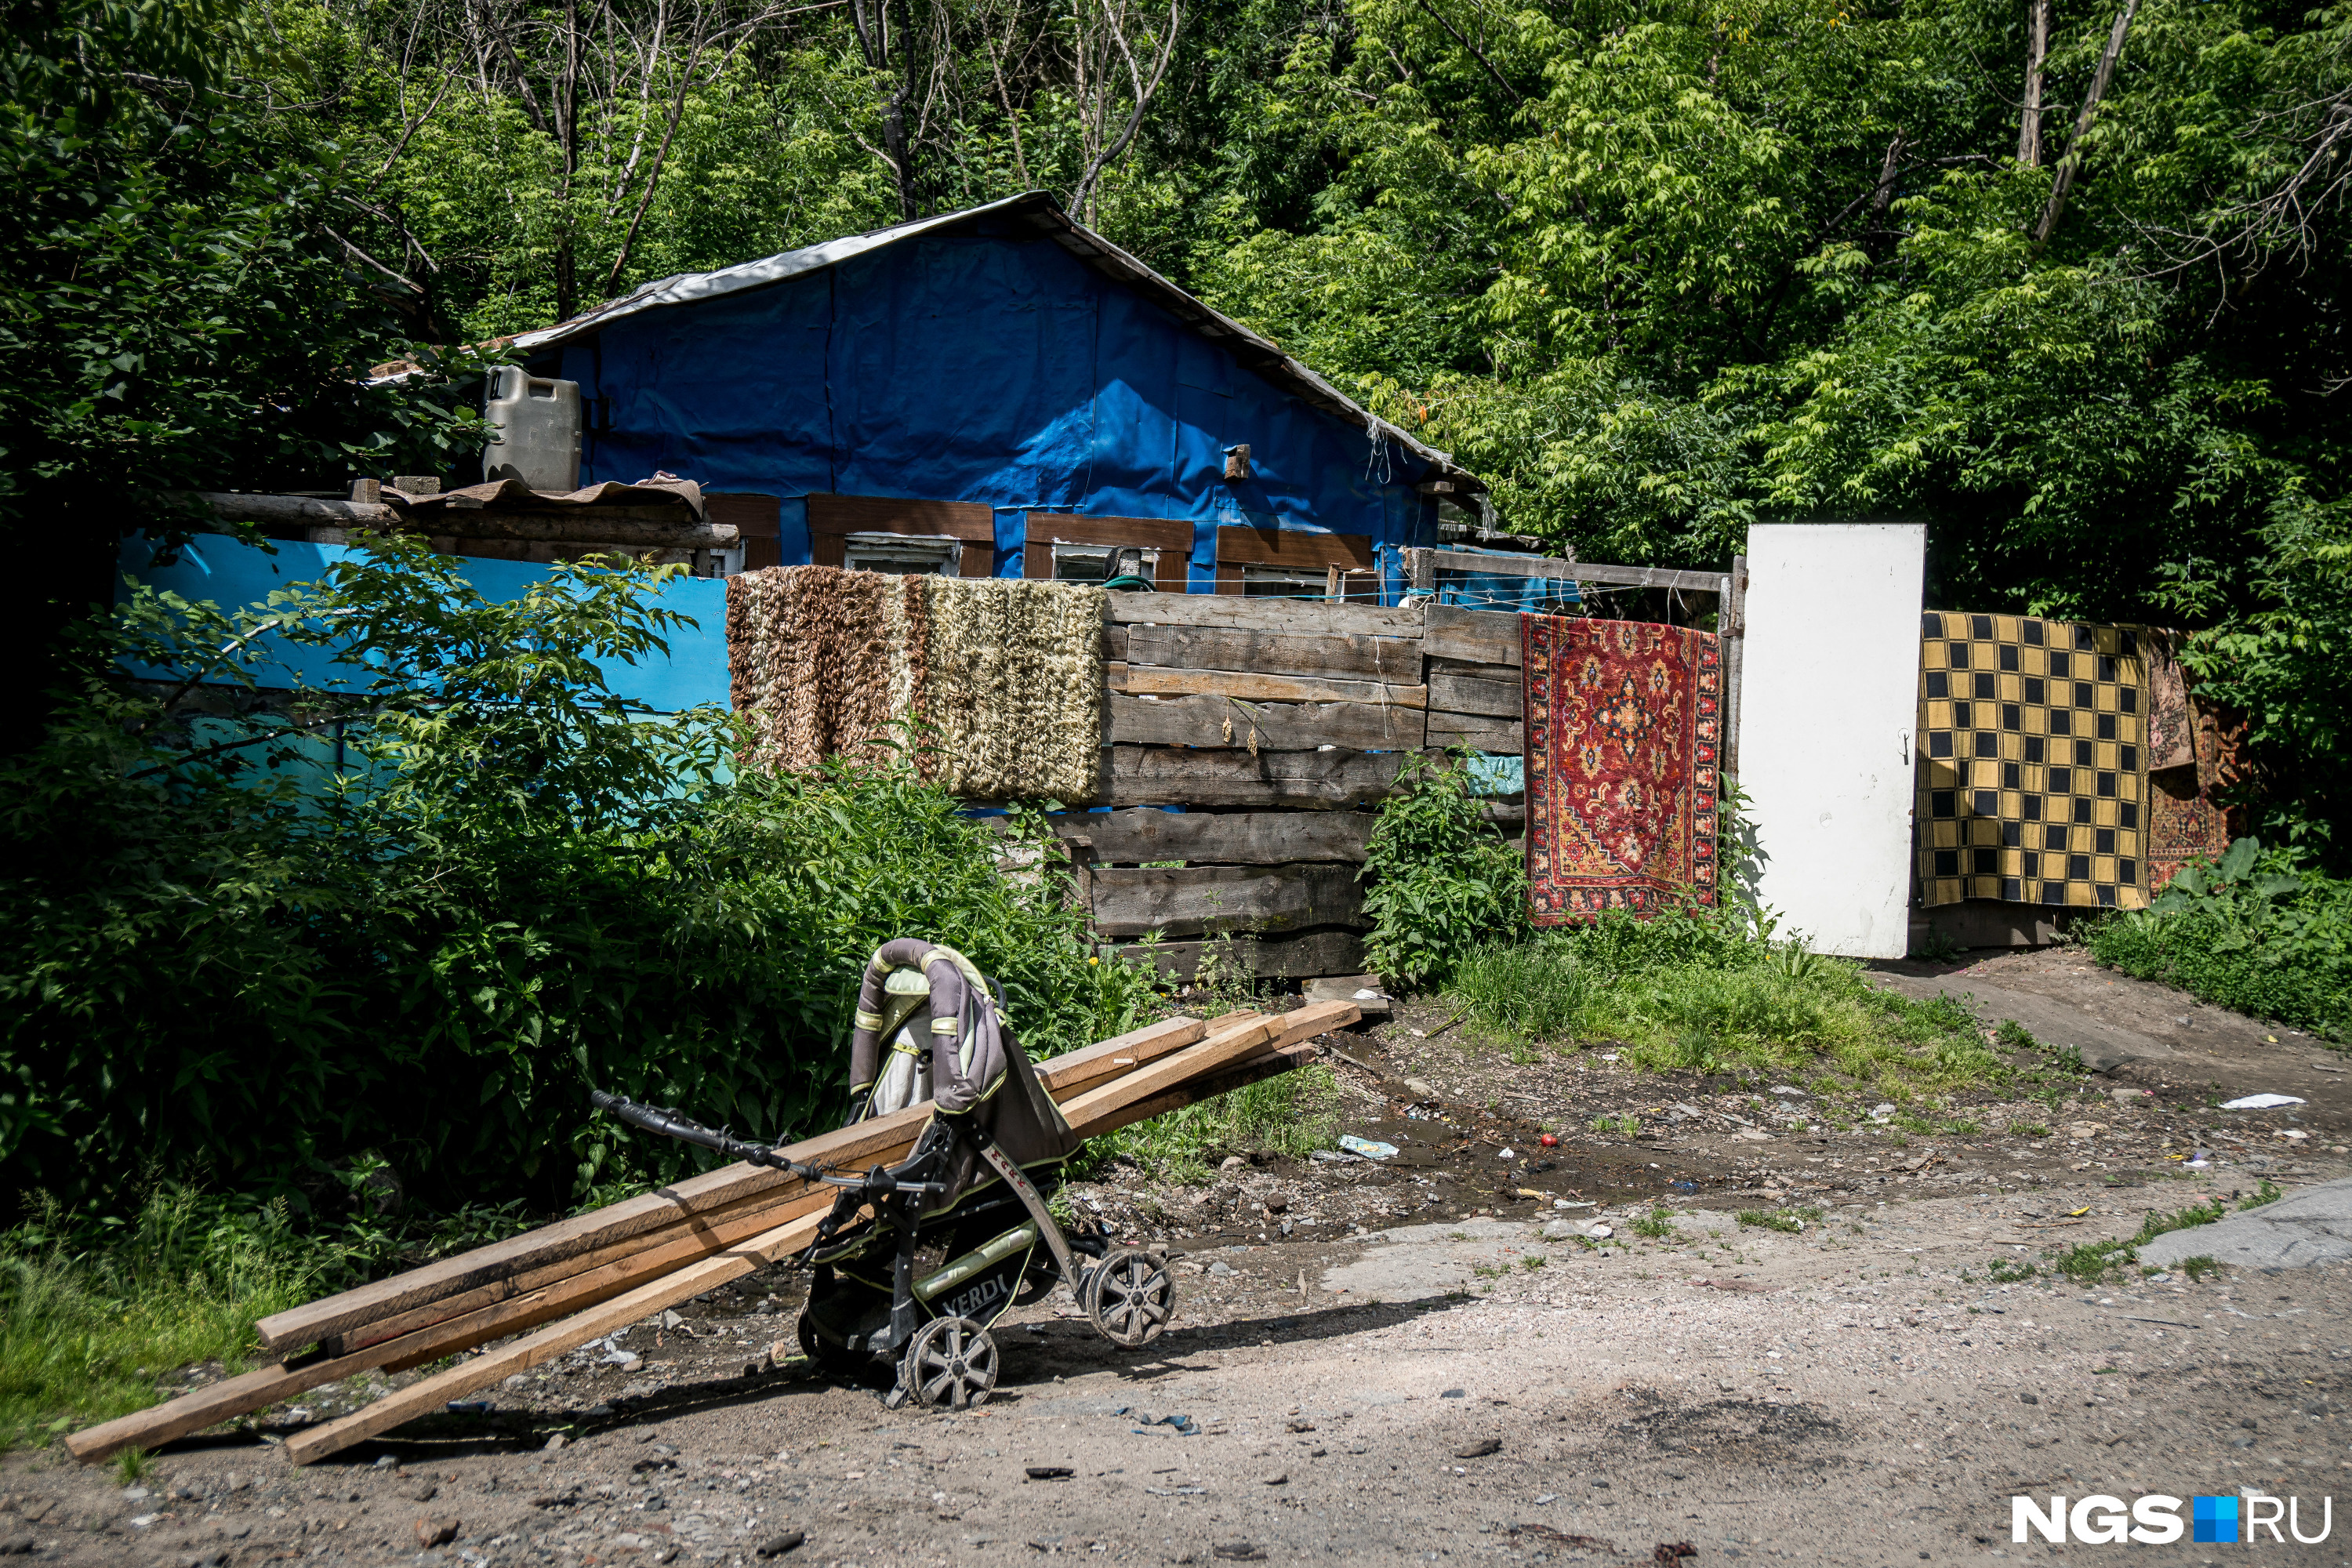 Чужие в цыганские переулки не заходят, поэтому двери здесь нараспашку, при этом закоулки этих улиц часто используют для закладок с наркотиками, пожаловались местные жители